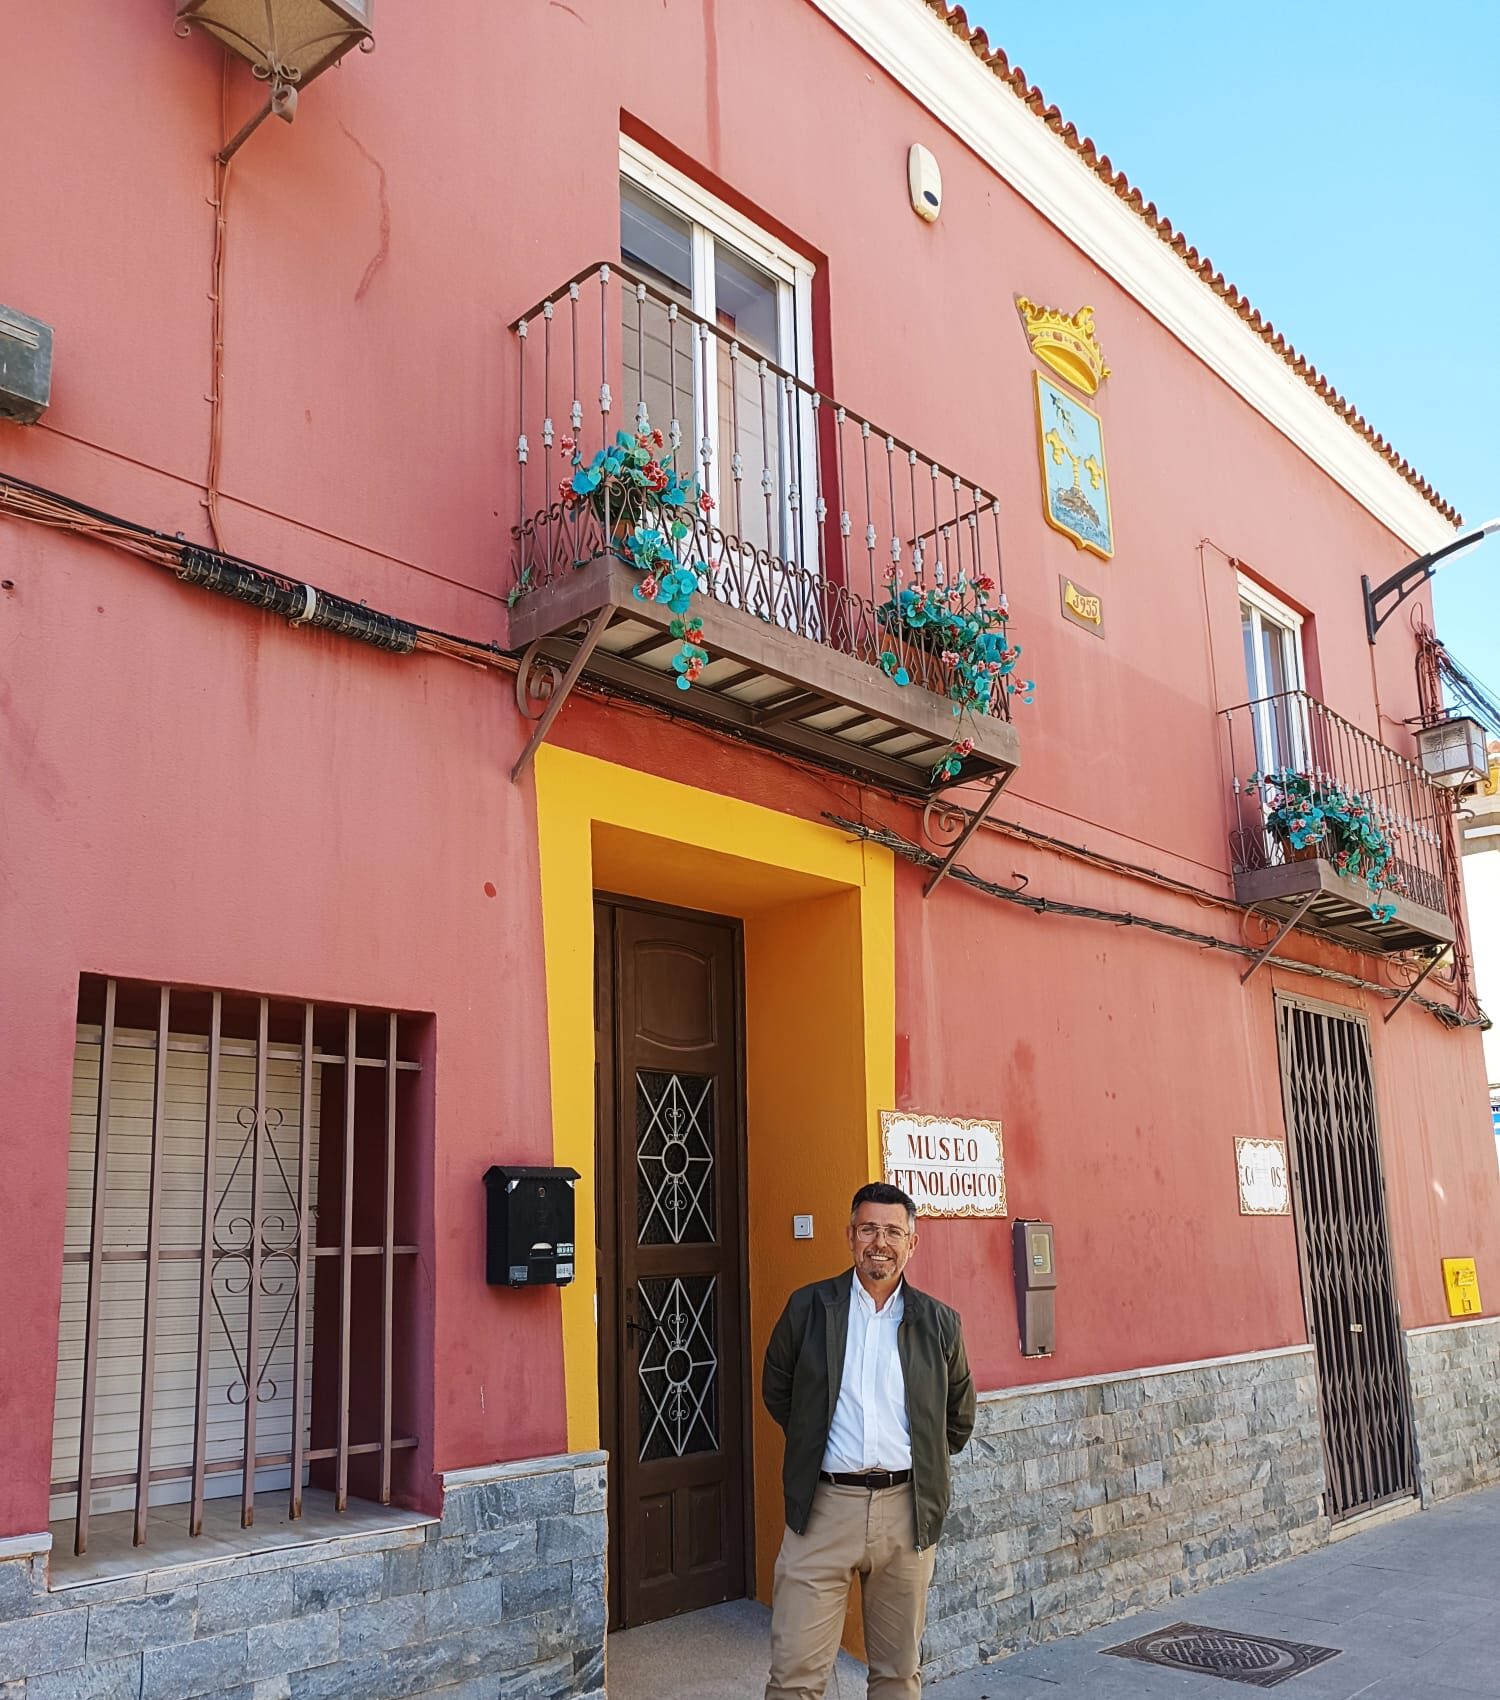 El Ayuntamiento modernizará y hará accesible el Museo Etnológico en la antigua casa del Marqués de Rafal